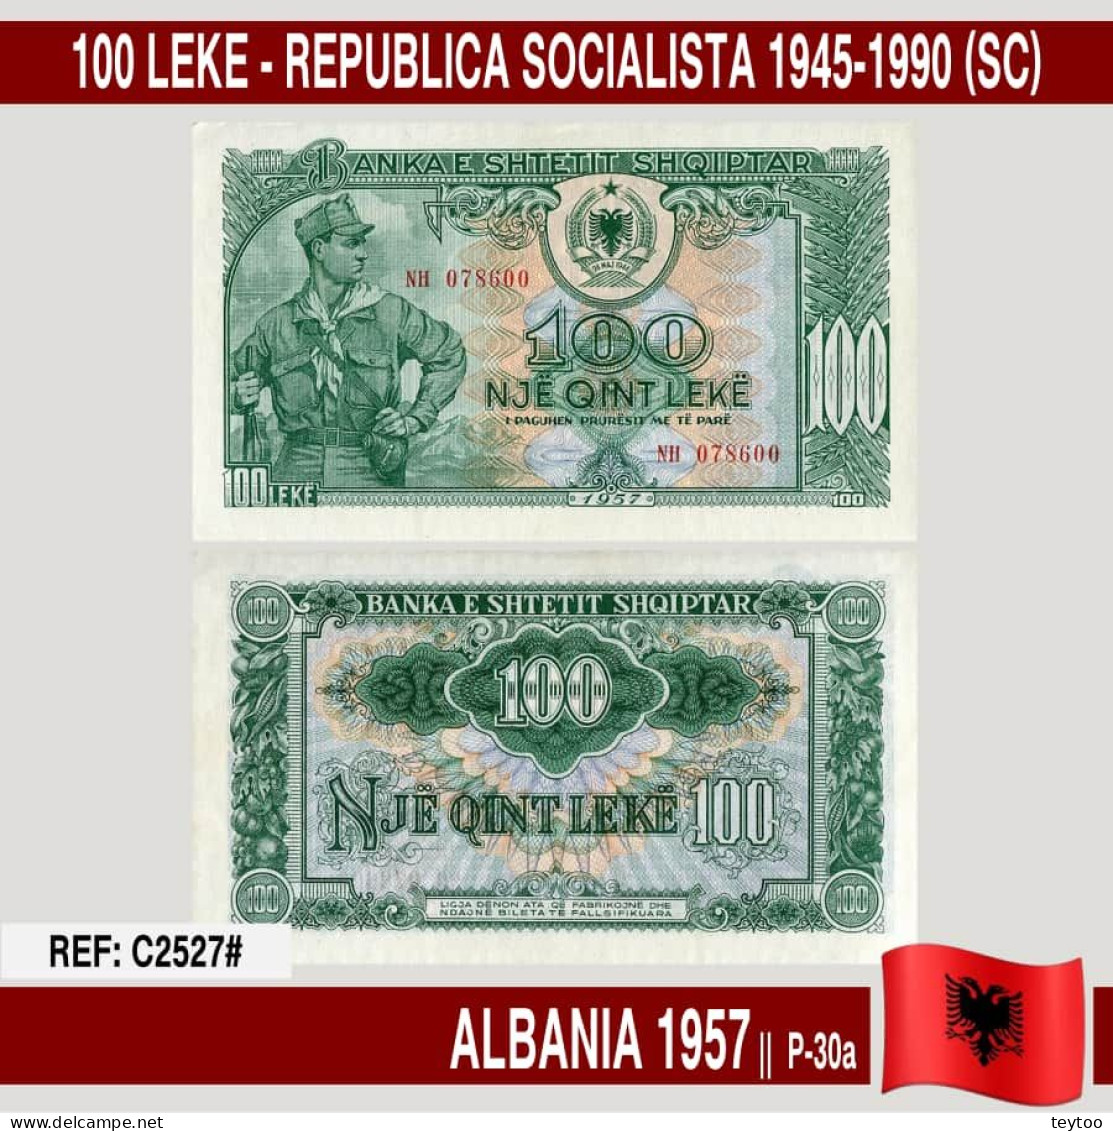 C2527# Albania 1957. 100 Lekë. República Socialista 1945-1990 (UNC) P-30a - Albania